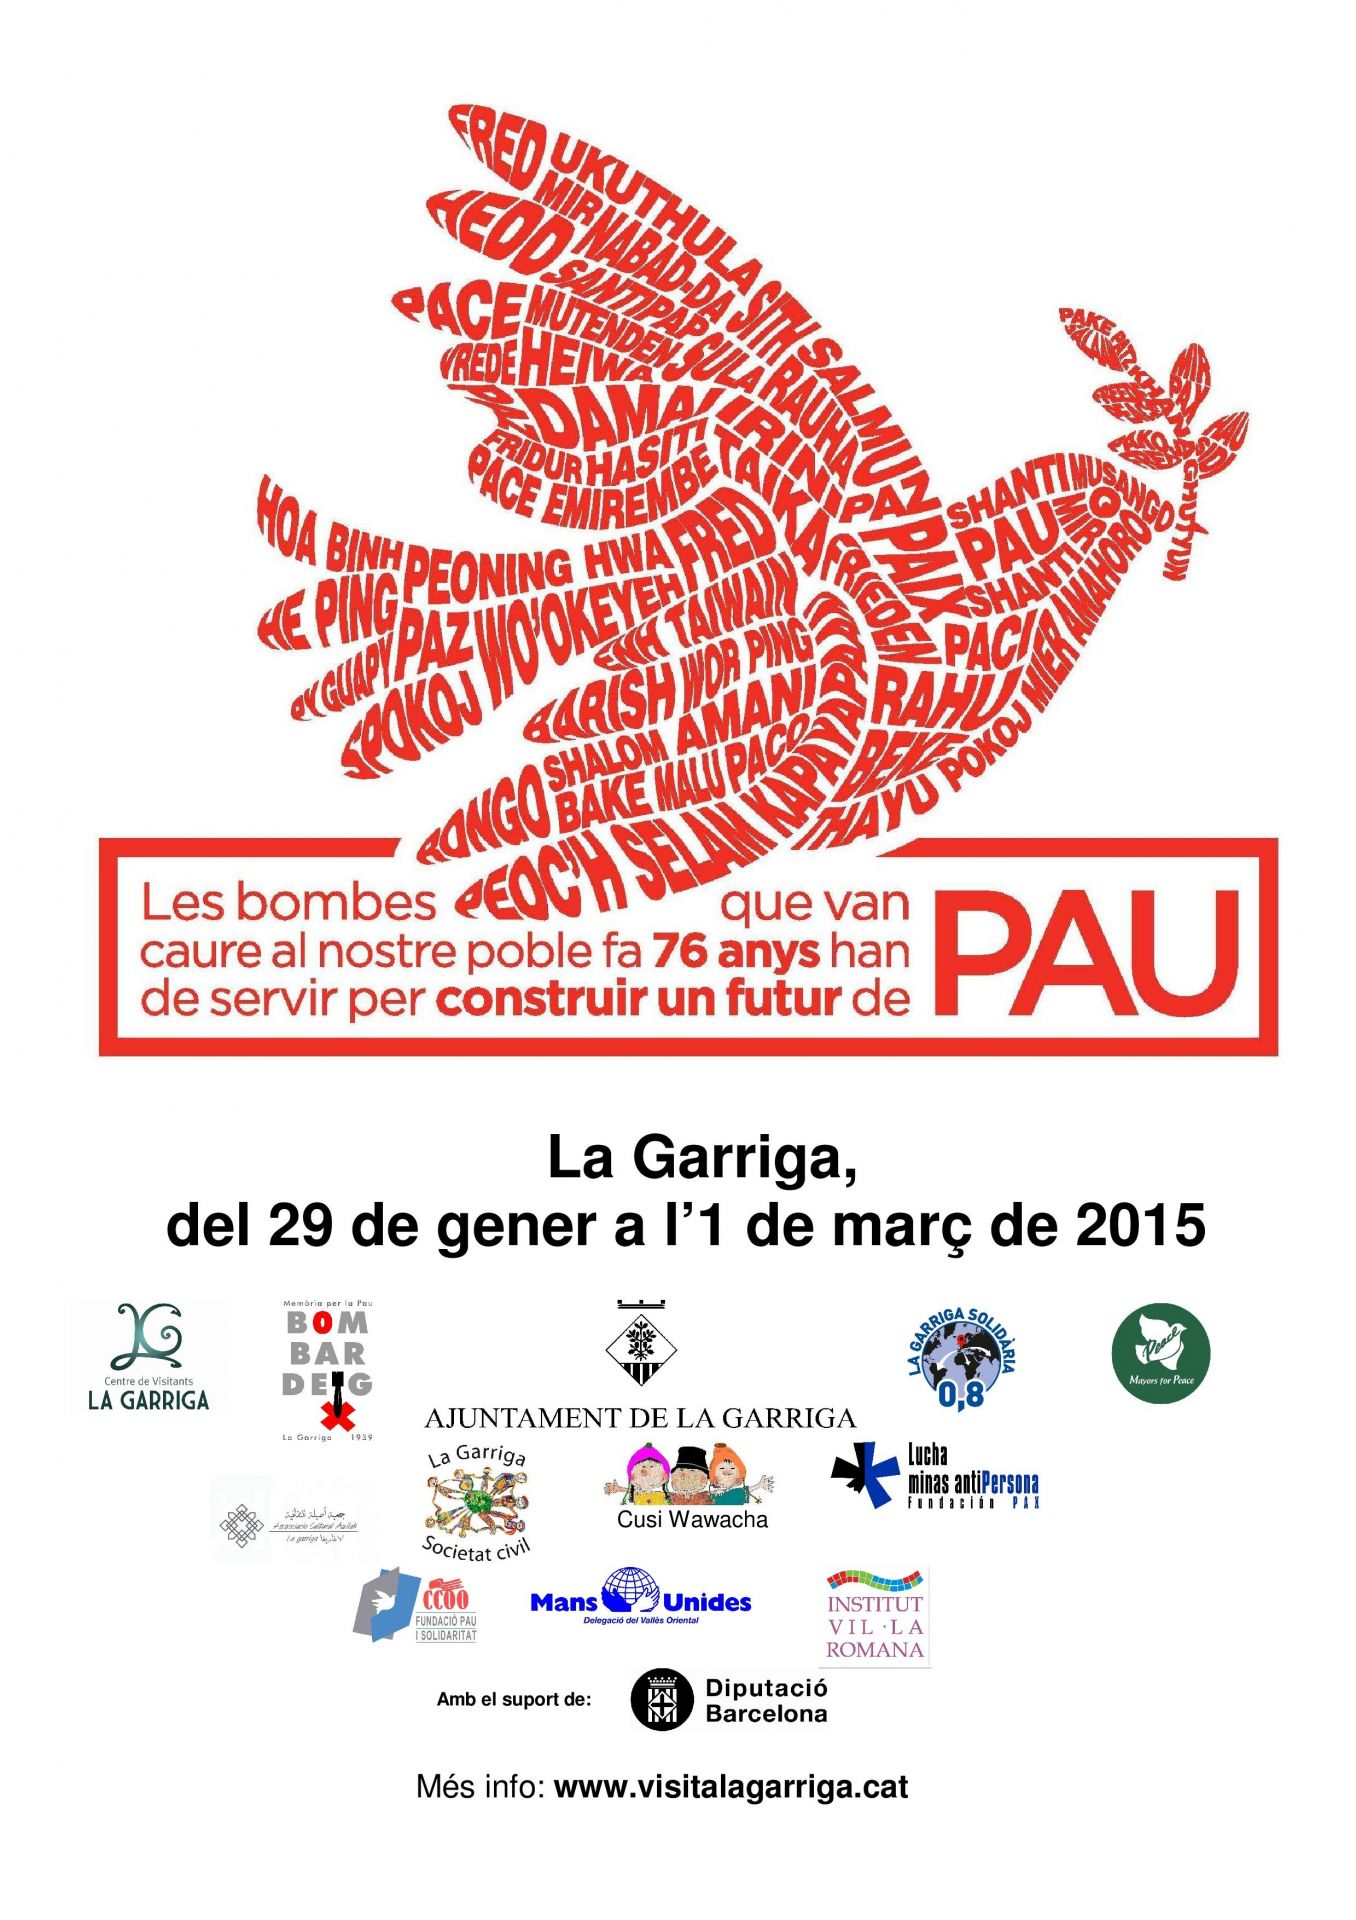 CommemoraciÃ³ del bombardeig a la Garriga 2015